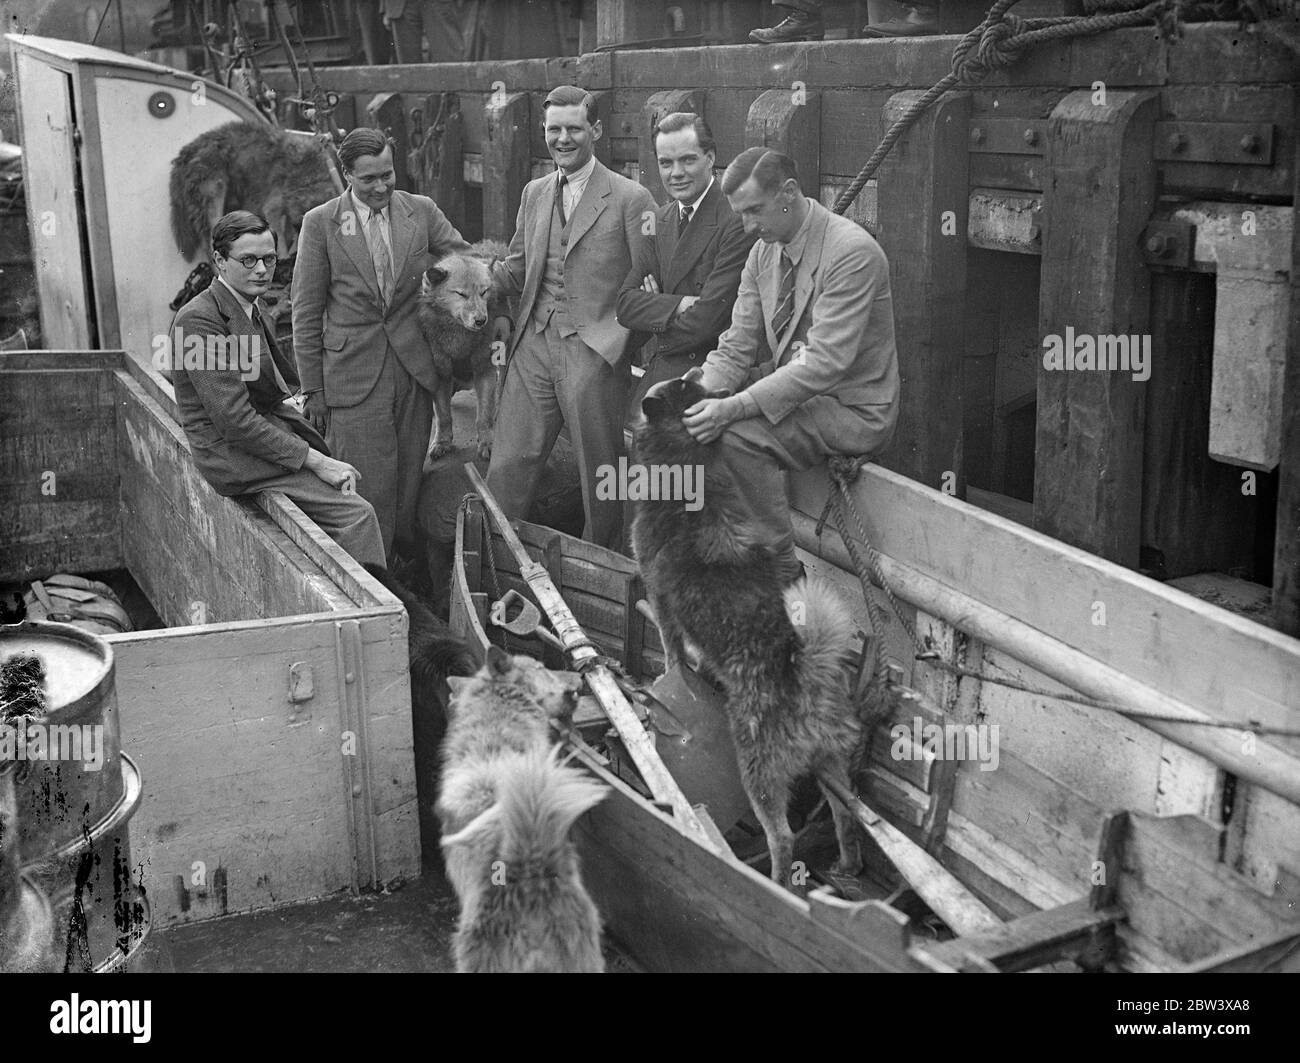 Expédition de l'Université d'Oxford, domicile de l'Arctique avec 16 huskies . Après une année passée dans les régions polaires du nord de l'Islande et de la Laponie, l'expédition de l'Université d'Oxford est arrivée à Hayes Wharf , Londres sur le Nordkapp II . Ils ont ramené avec eux 16 chiens husky pour le zoo de Whipsnade - 11 chiots entièrement cultivés et 5 chiots nés sur le voyage à la maison . Un membre de l'expédition a eu une petite évasion quand ils ont été coupés sur la banquise ayant perdu leur canot. Ils ont fait un autre petit bateau d'une cabane et d'un lit d'air et ont pu retourner à leur base . L'expédition , qui a été conduite par M. . Alexandre ( S Banque D'Images